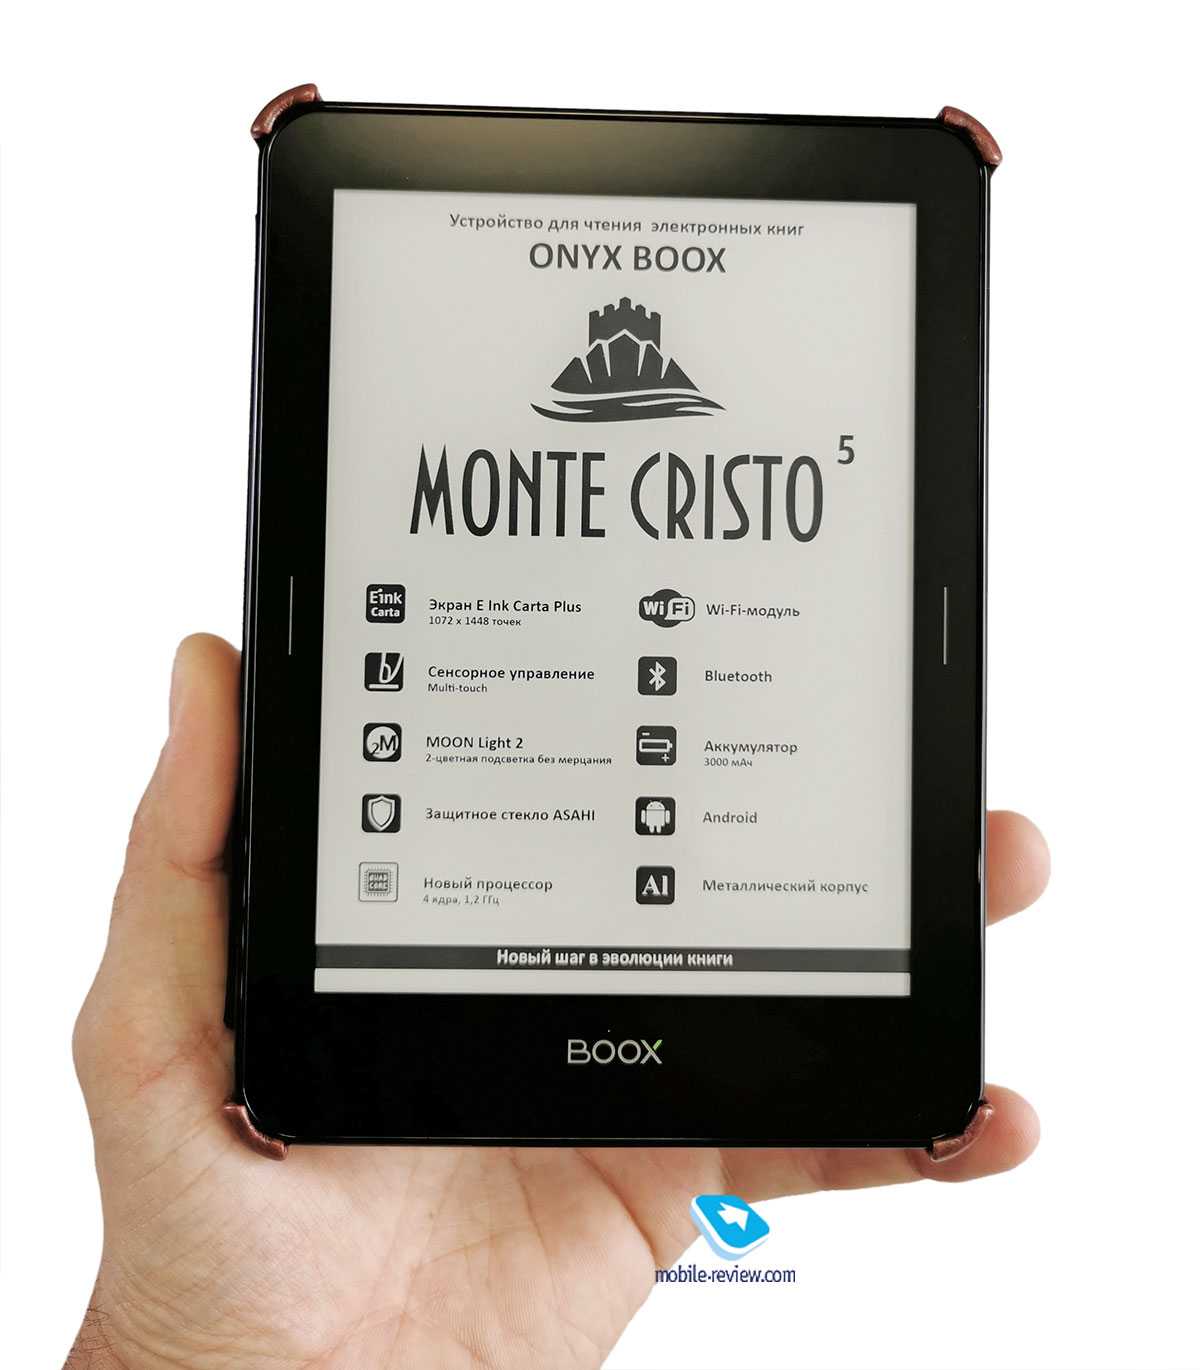 Обзор onyx boox monte cristo 3 — практически идеальная электронная книга